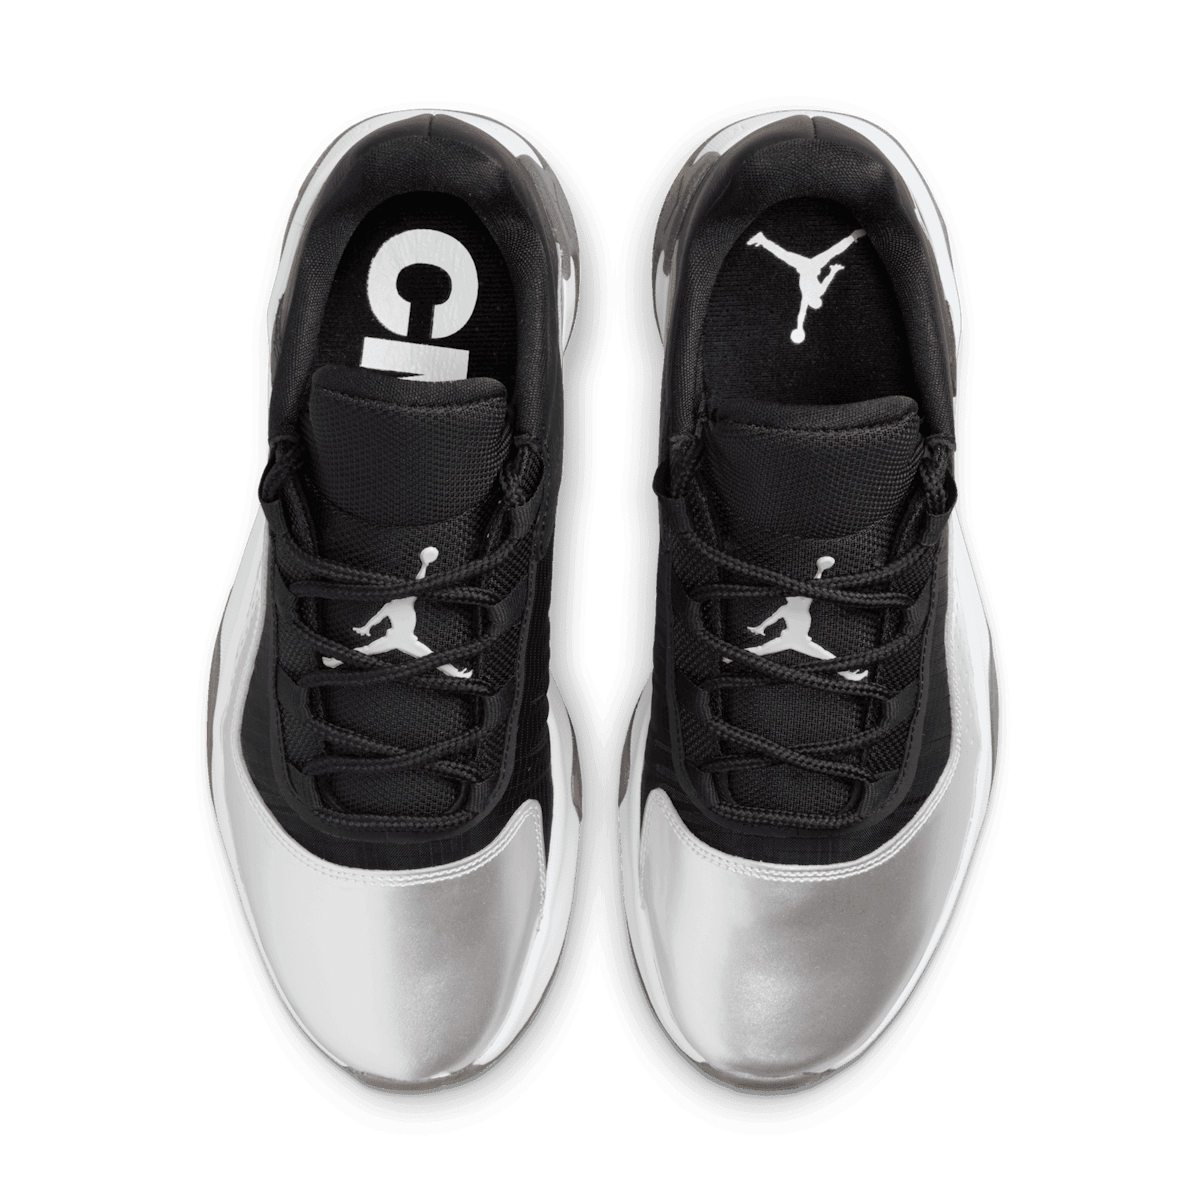 Air Jordan 11 CMFT Low Shoes in Black Angle 1